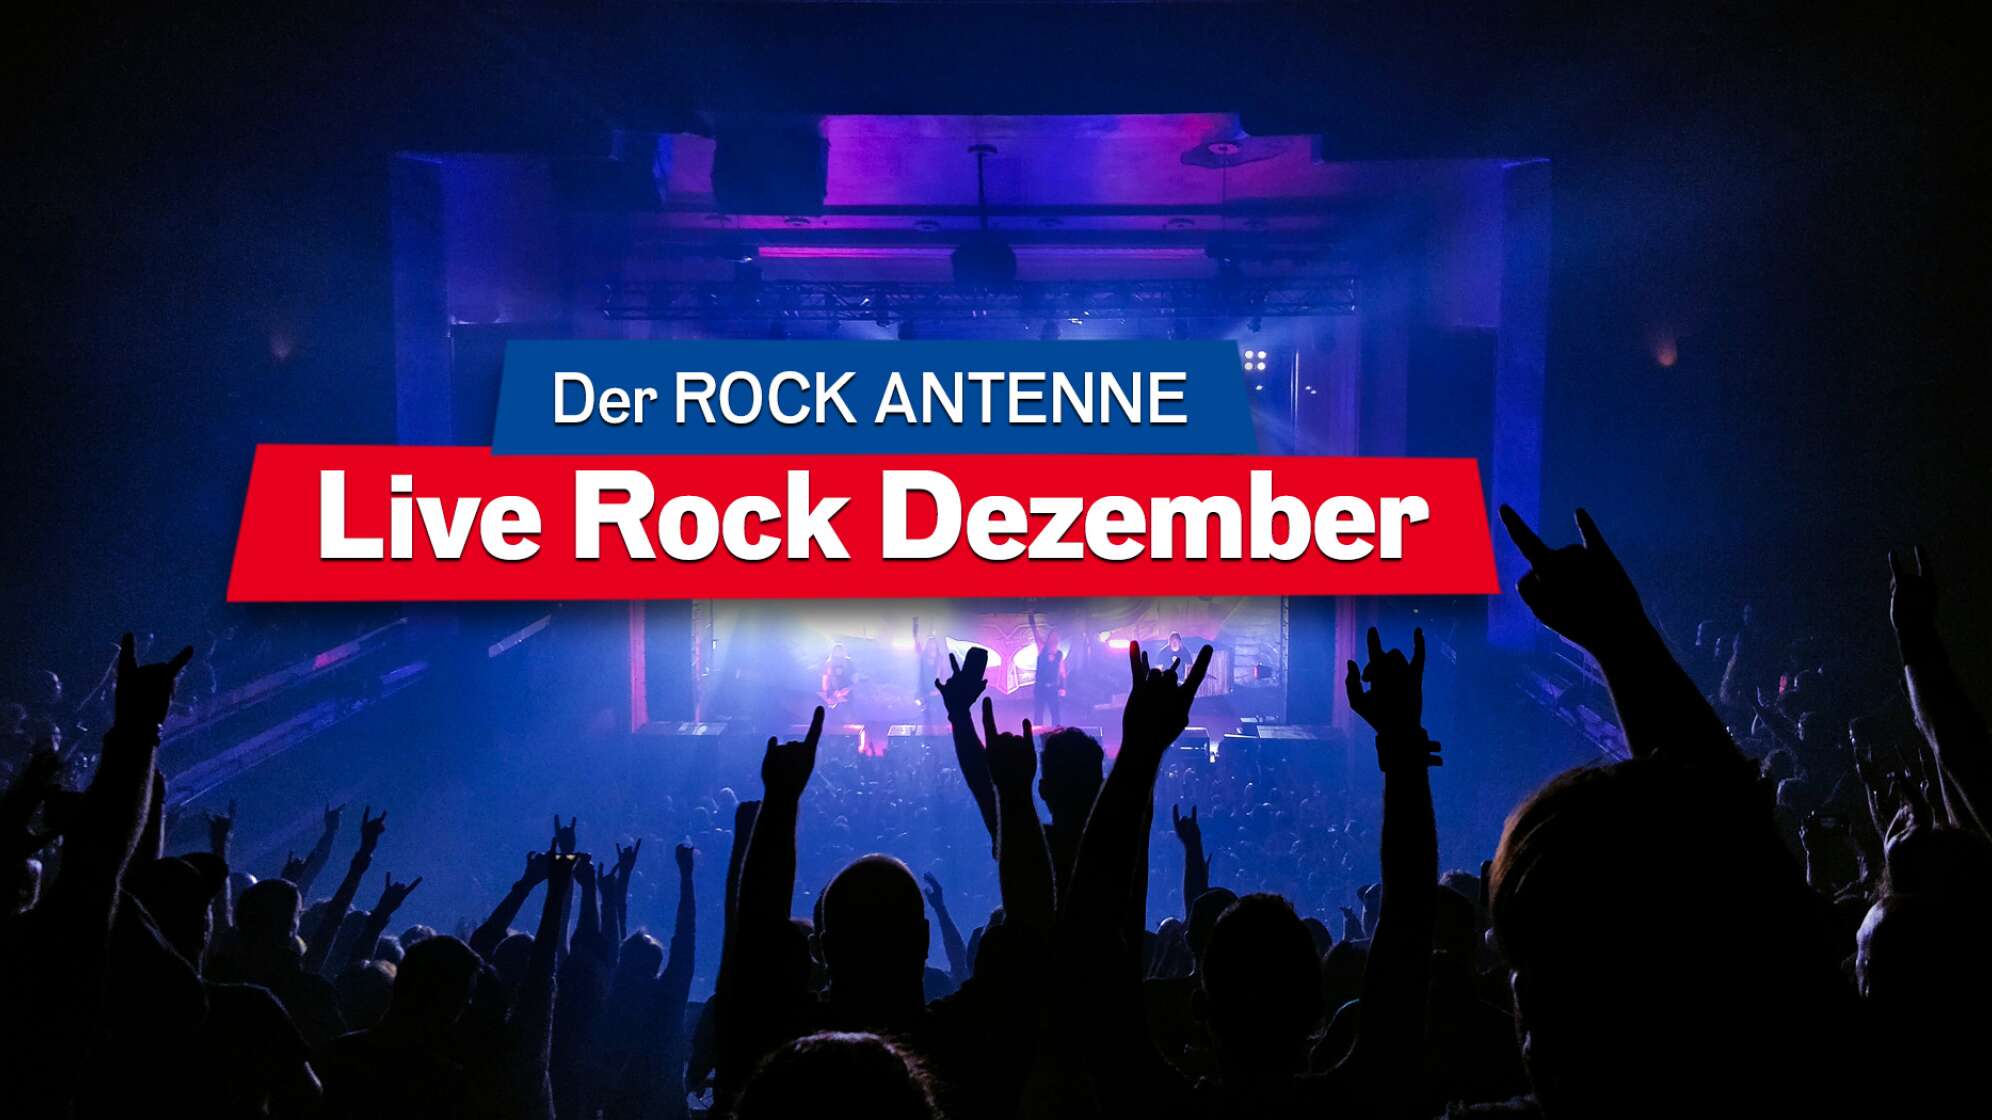 Blick auf die Bühne bei einem Konzert, Aufschrift "Der ROCK ANTENNE Live Rock Dezember"